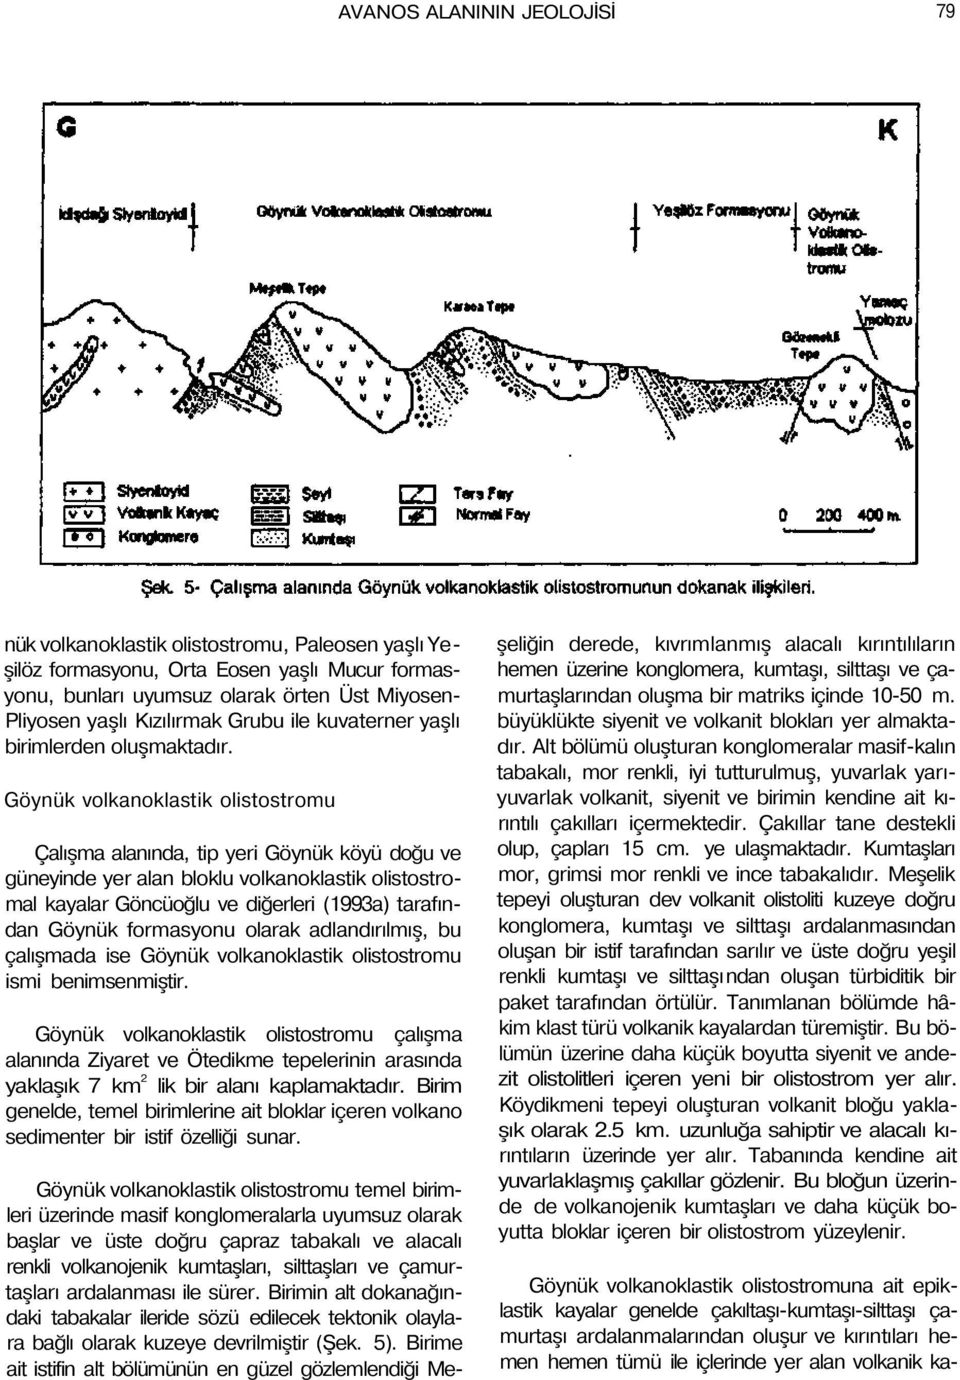 Göynük volkanoklastik olistostromu Çalışma alanında, tip yeri Göynük köyü doğu ve güneyinde yer alan bloklu volkanoklastik olistostromal kayalar Göncüoğlu ve diğerleri (1993a) tarafından Göynük